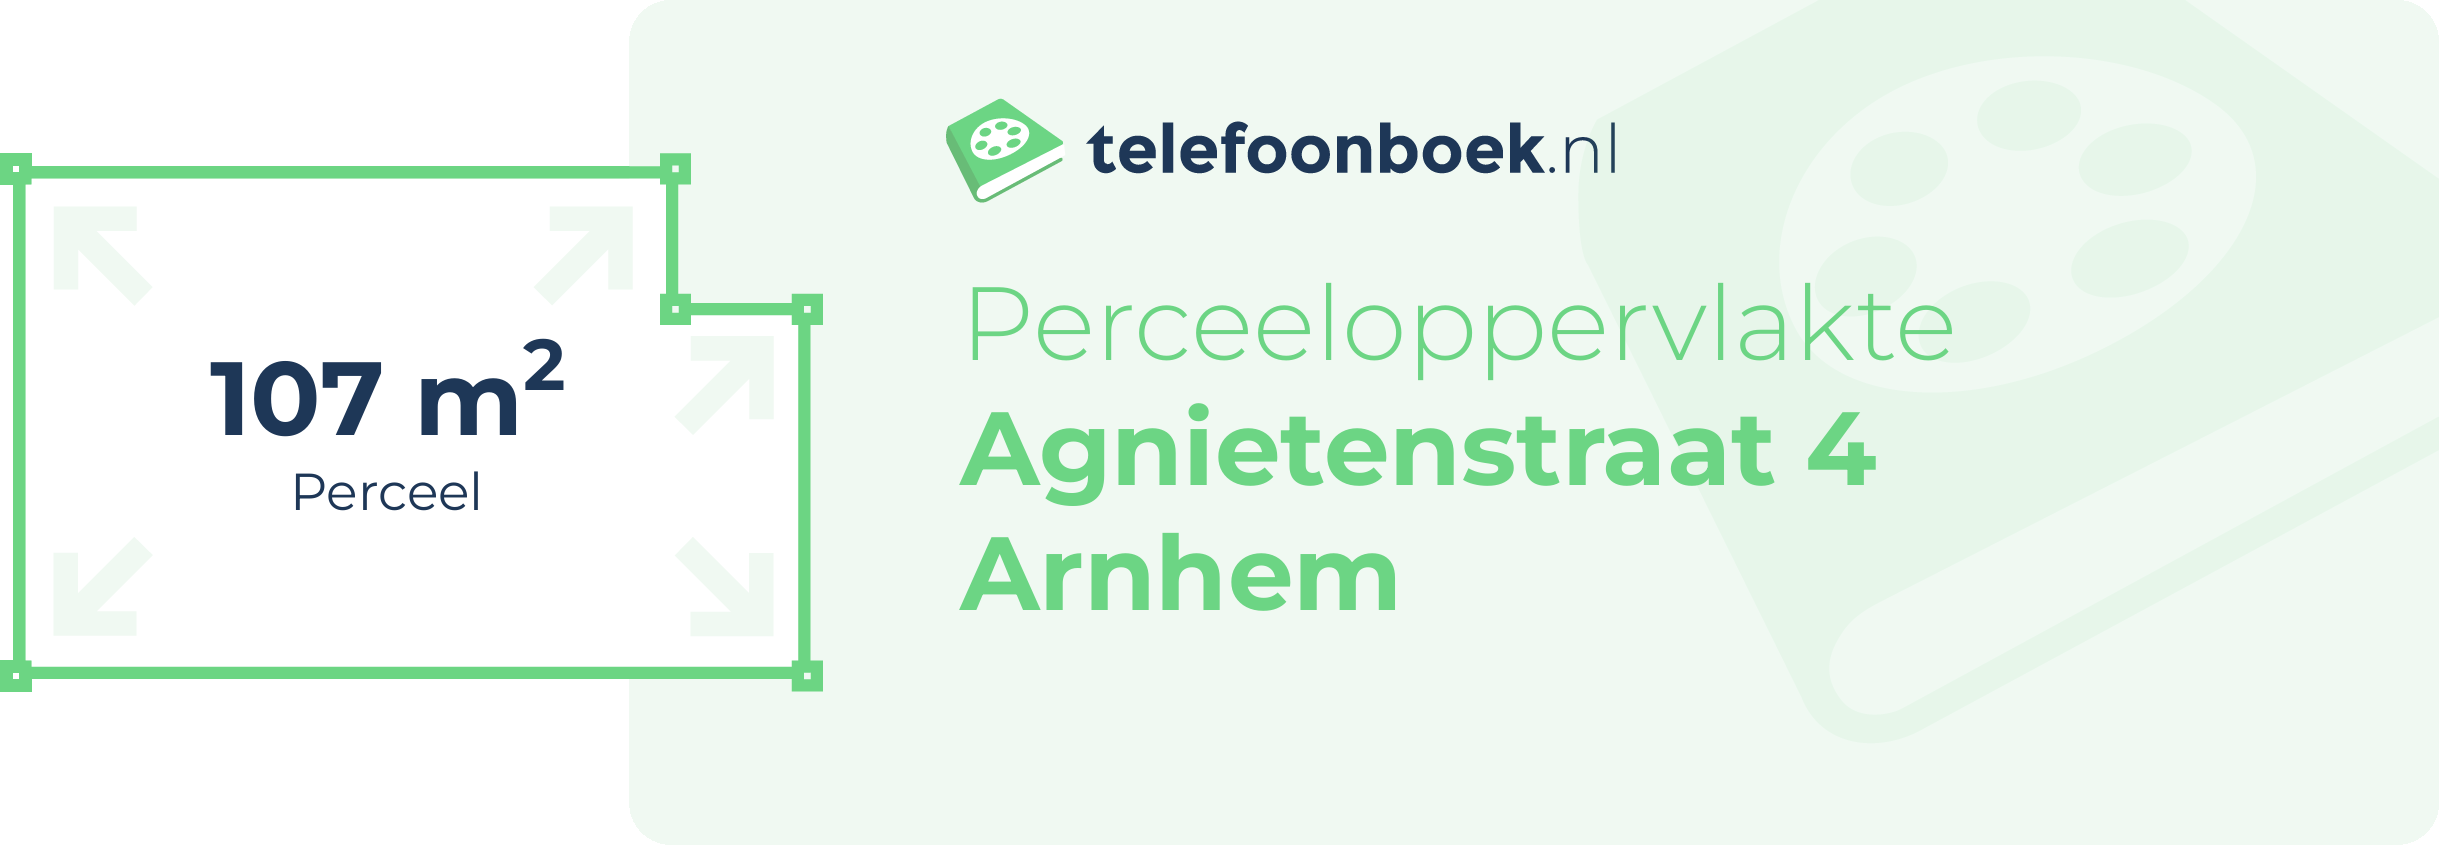 Perceeloppervlakte Agnietenstraat 4 Arnhem